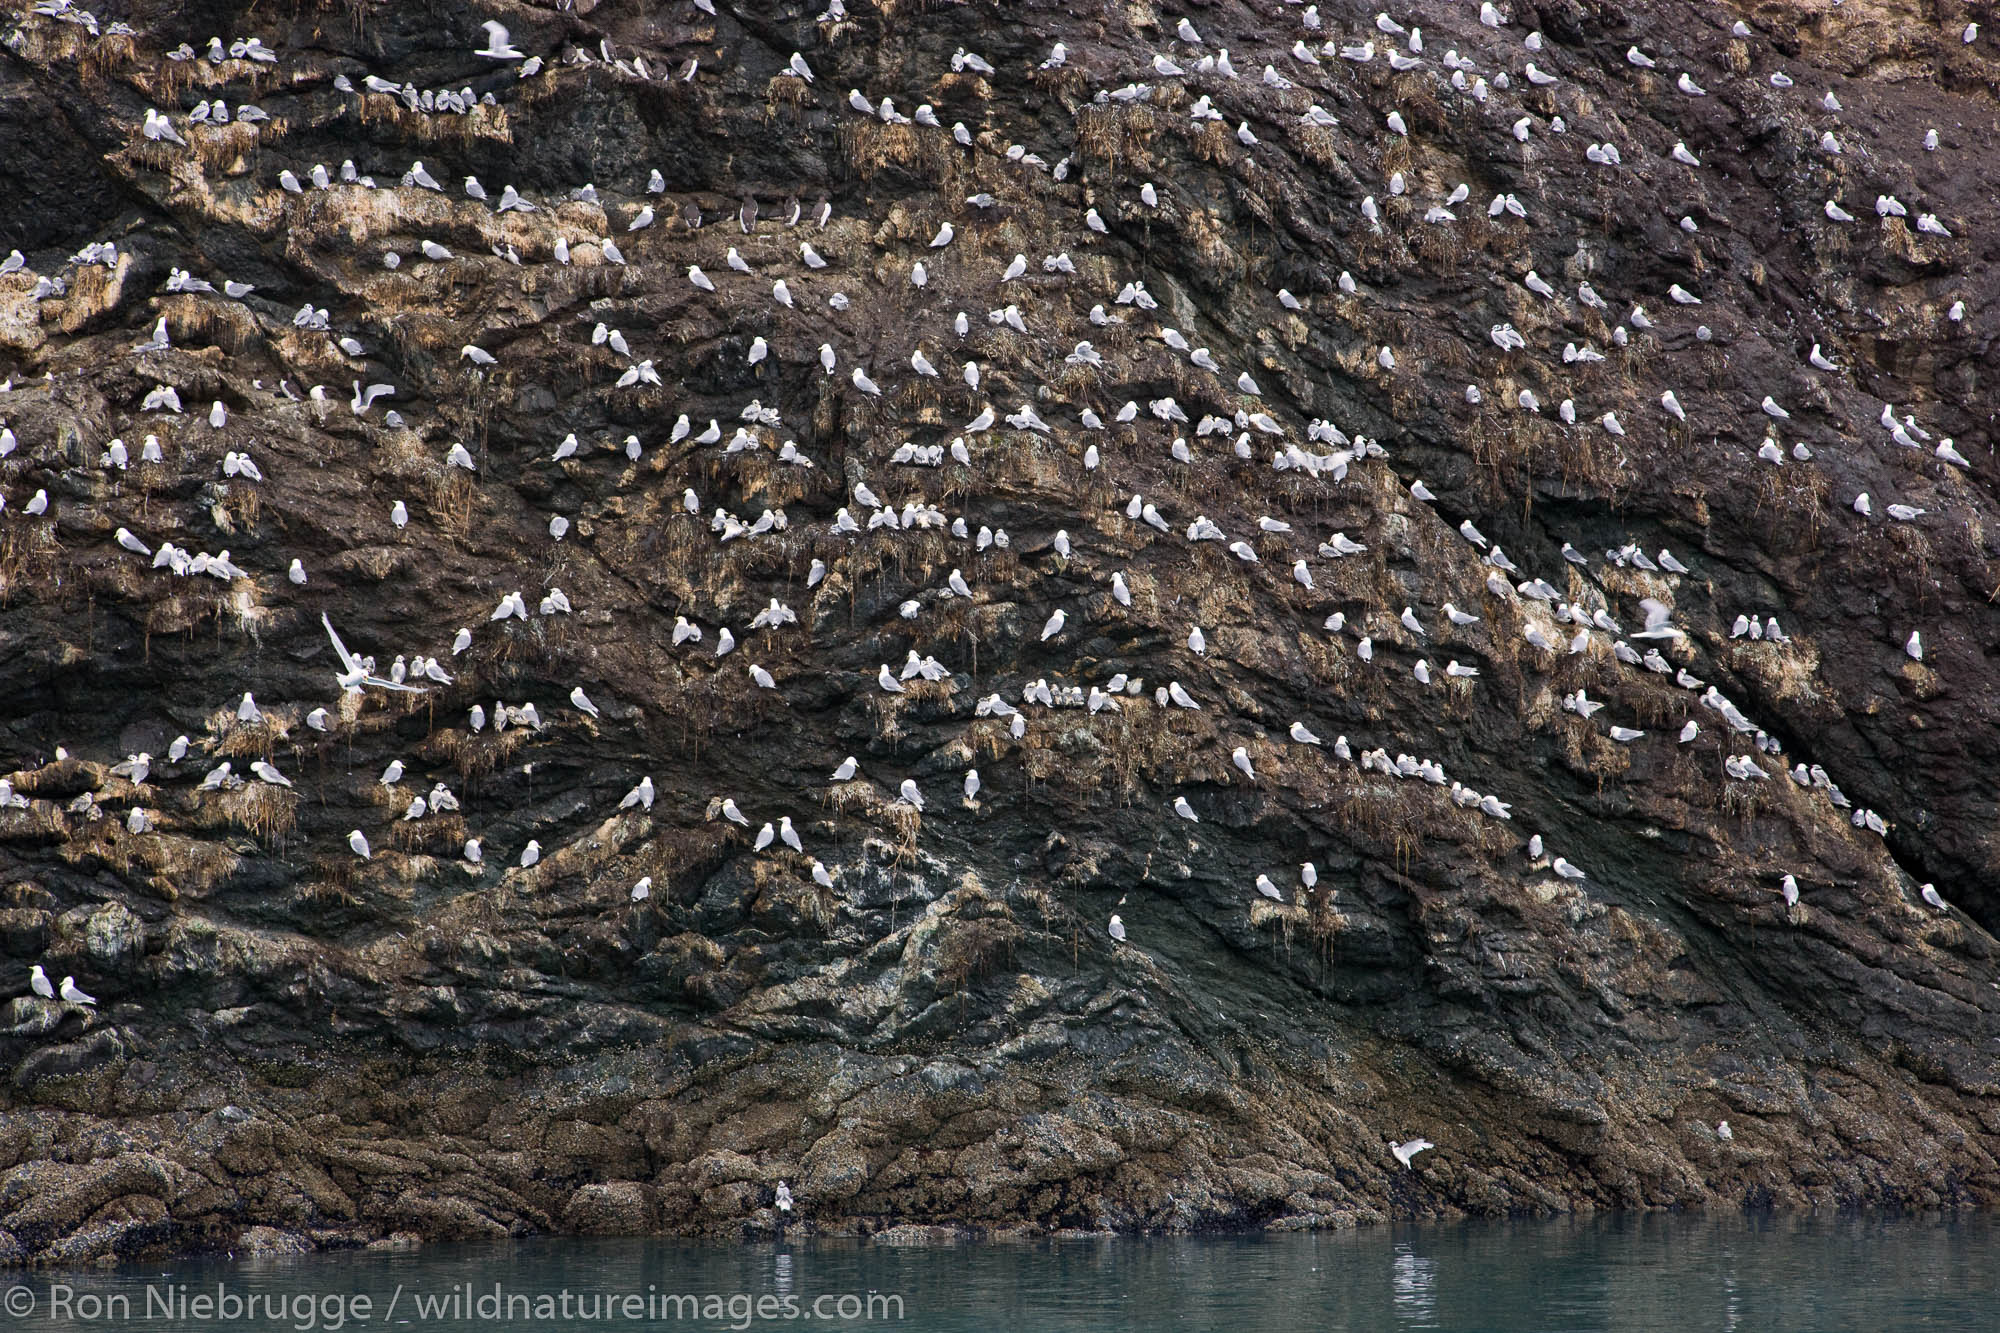 Birds on Gull Island, Kachemak Bay near Homer, Alaska.